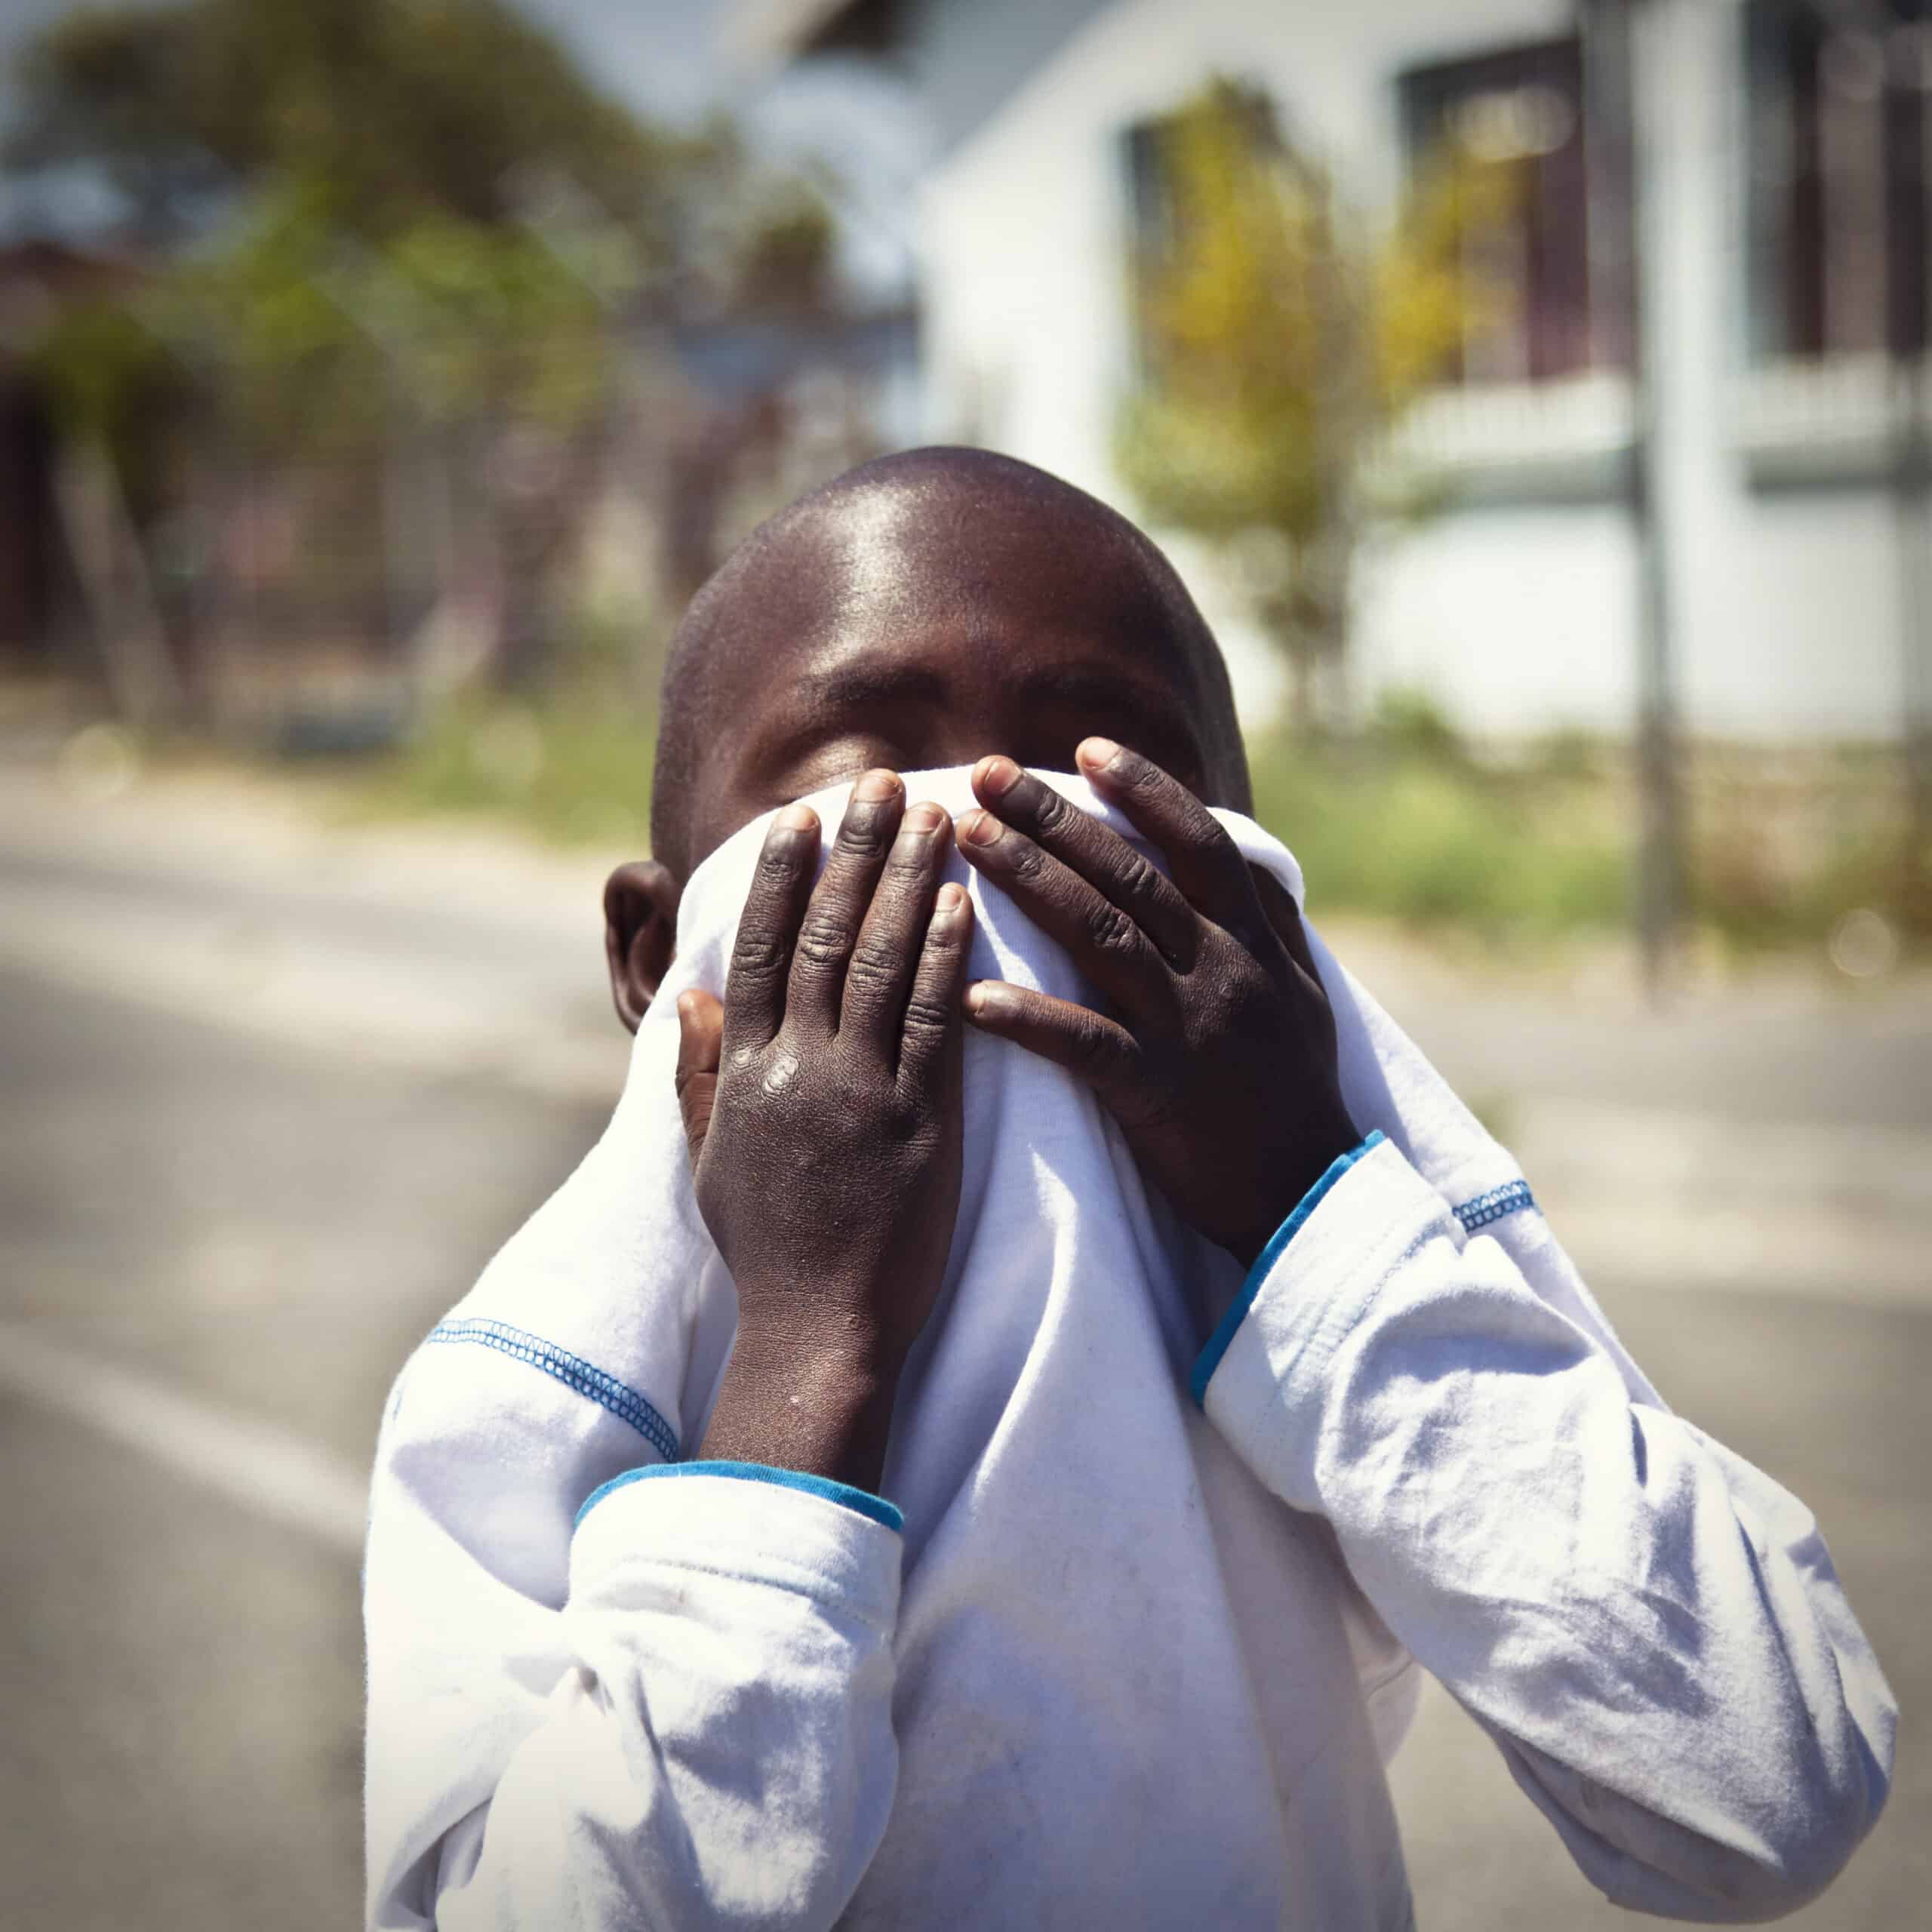 Ein kleiner Junge in einem weißen Hemd verdeckt sein Gesicht mit den Händen und steht auf einer sonnigen Straße mit verschwommenen Häusern im Hintergrund. © Fotografie Tomas Rodriguez